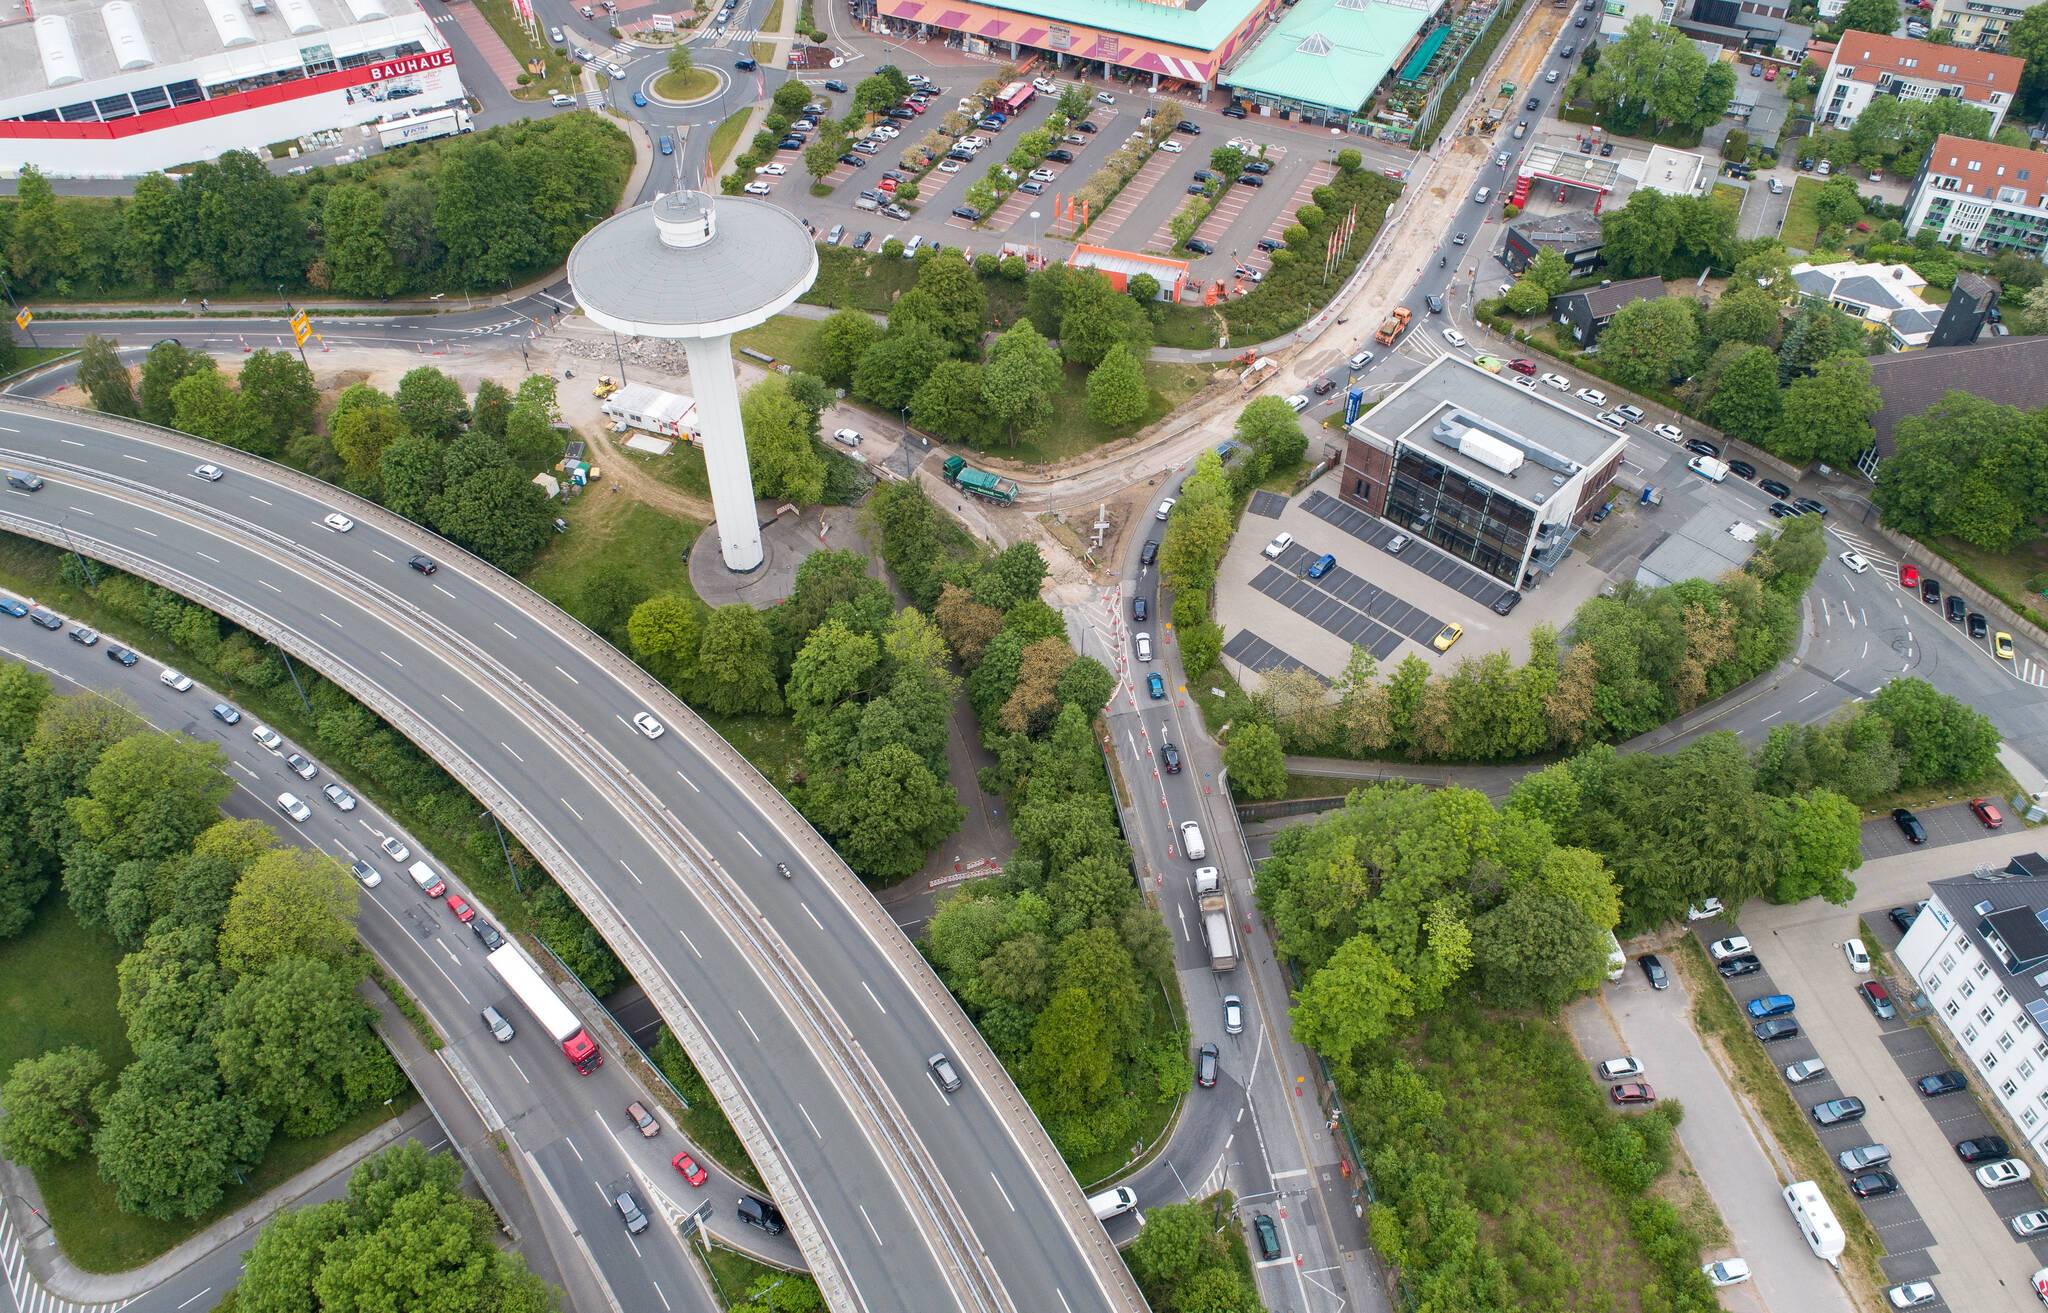  Der Kreisverkehr auf Lichtscheid (Bild aus dem Mai 2020). 